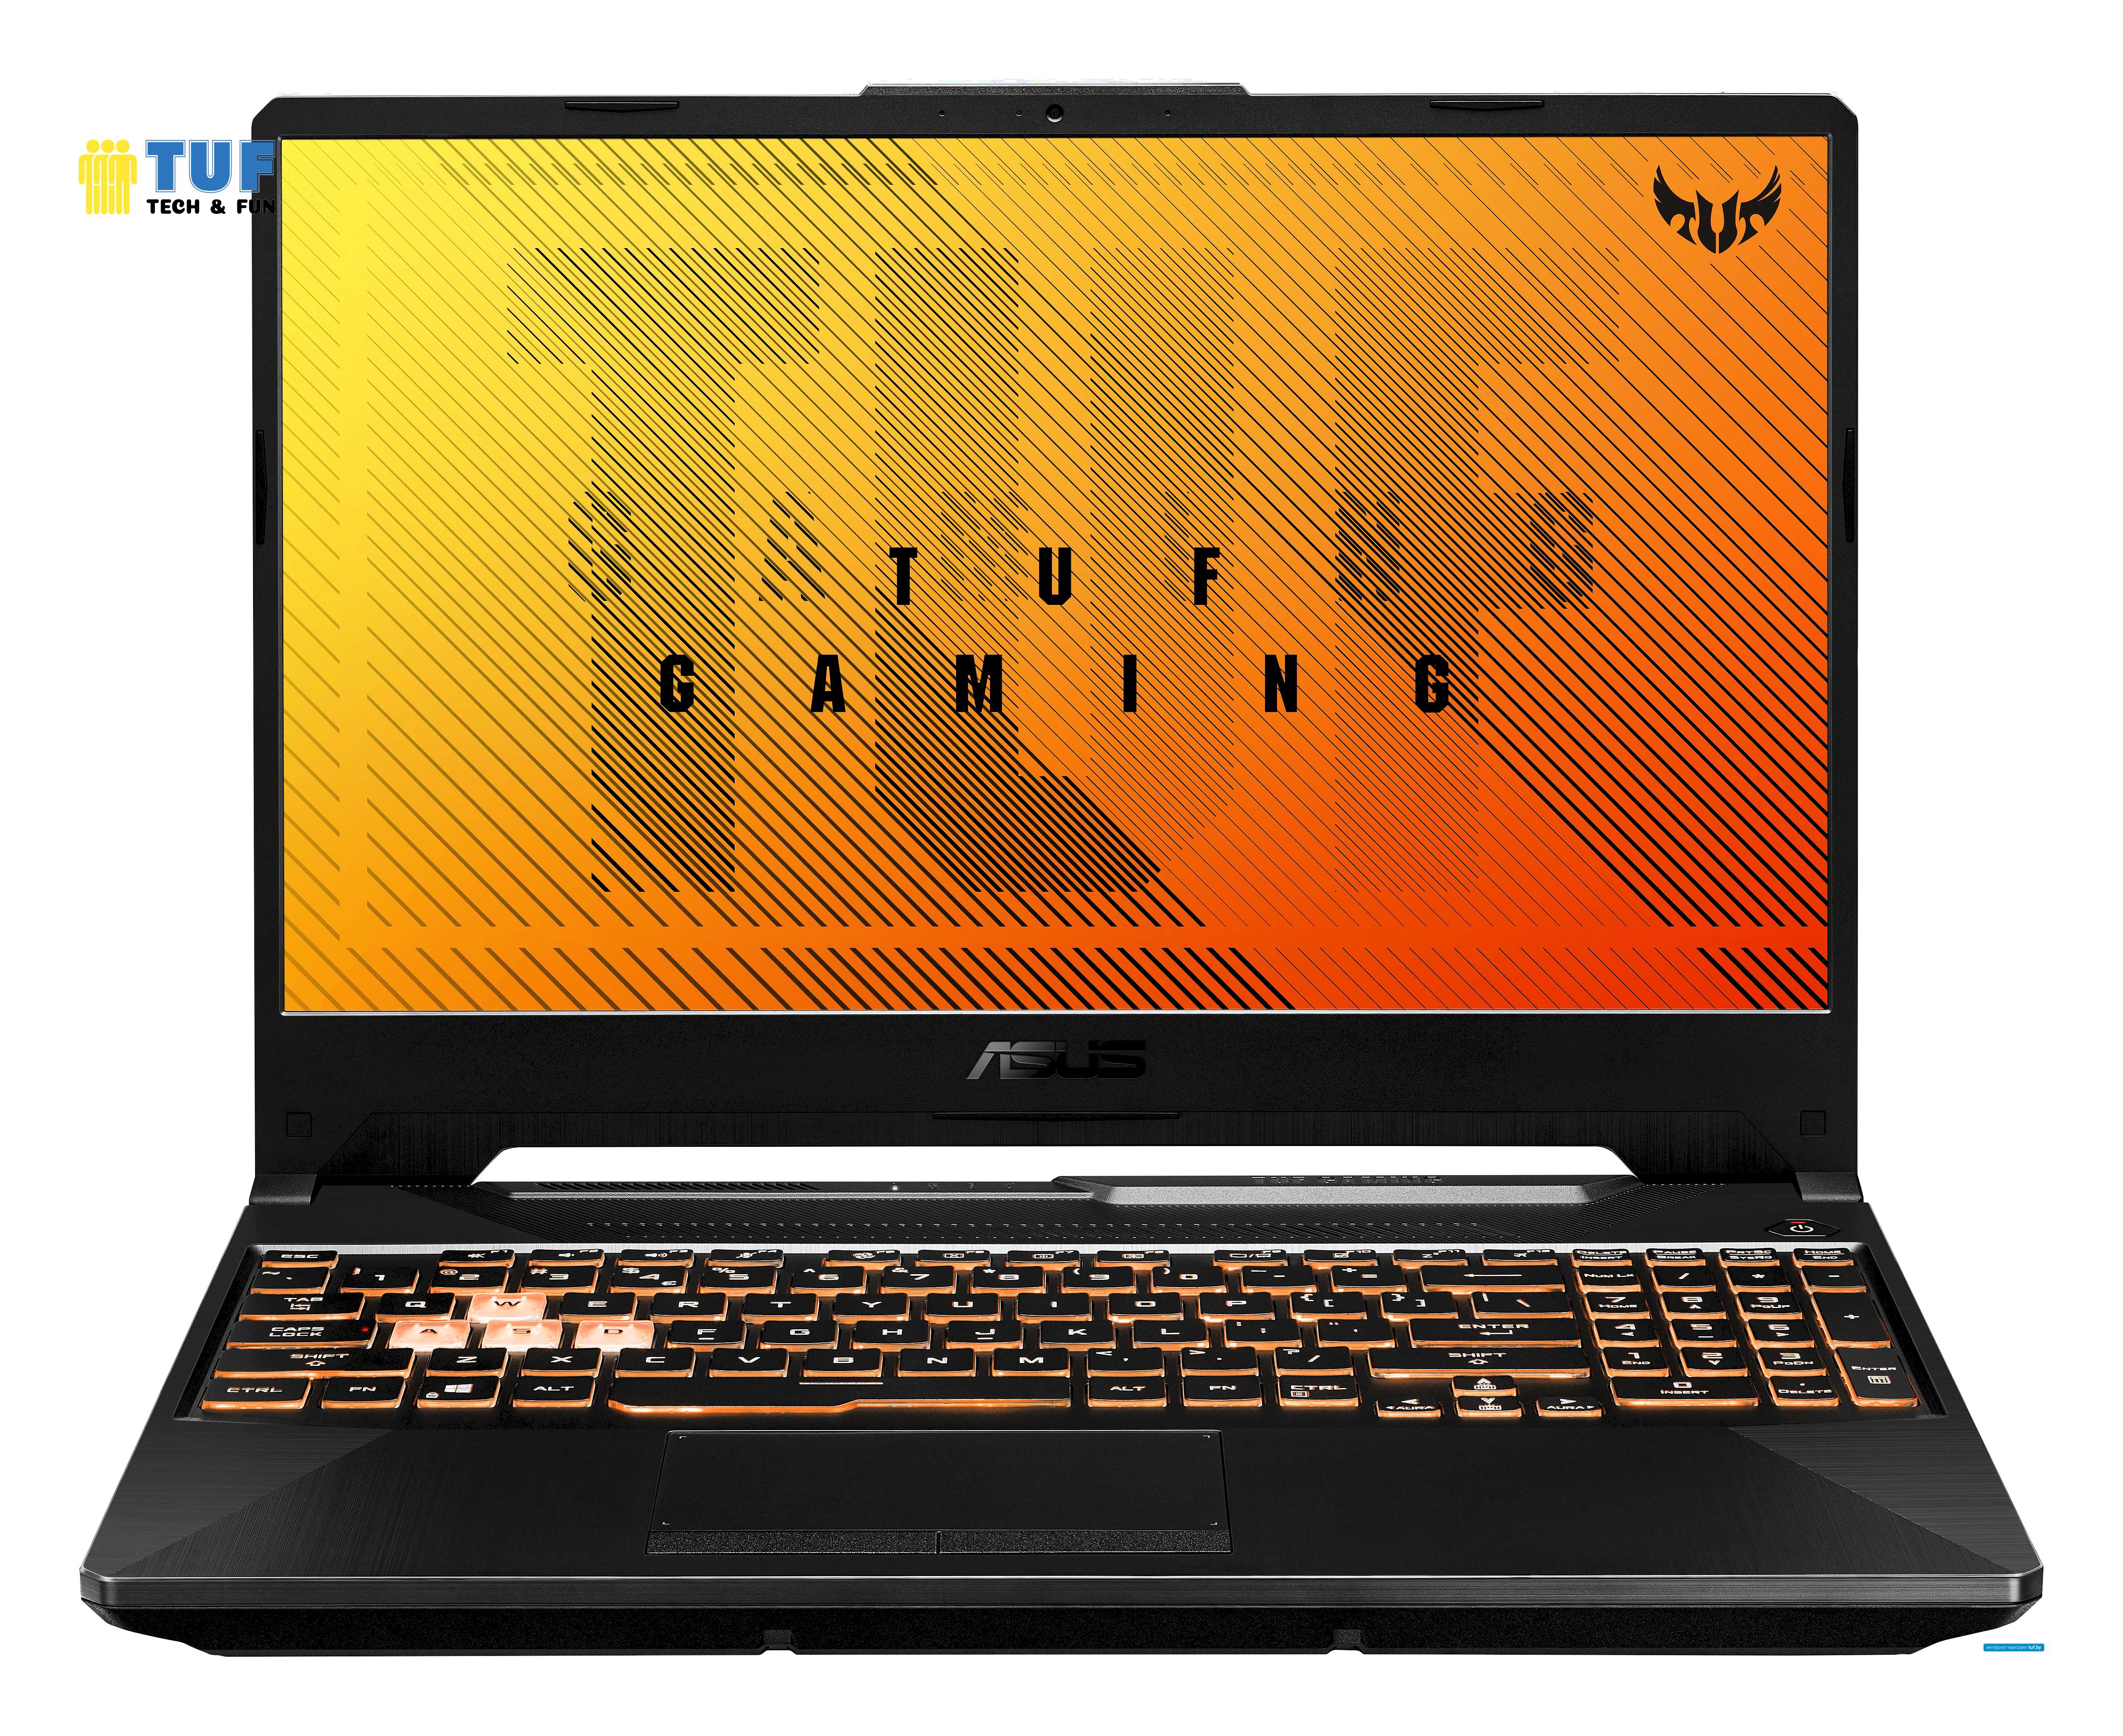 Игровой ноутбук ASUS TUF Gaming F15 FX506LI-HN012